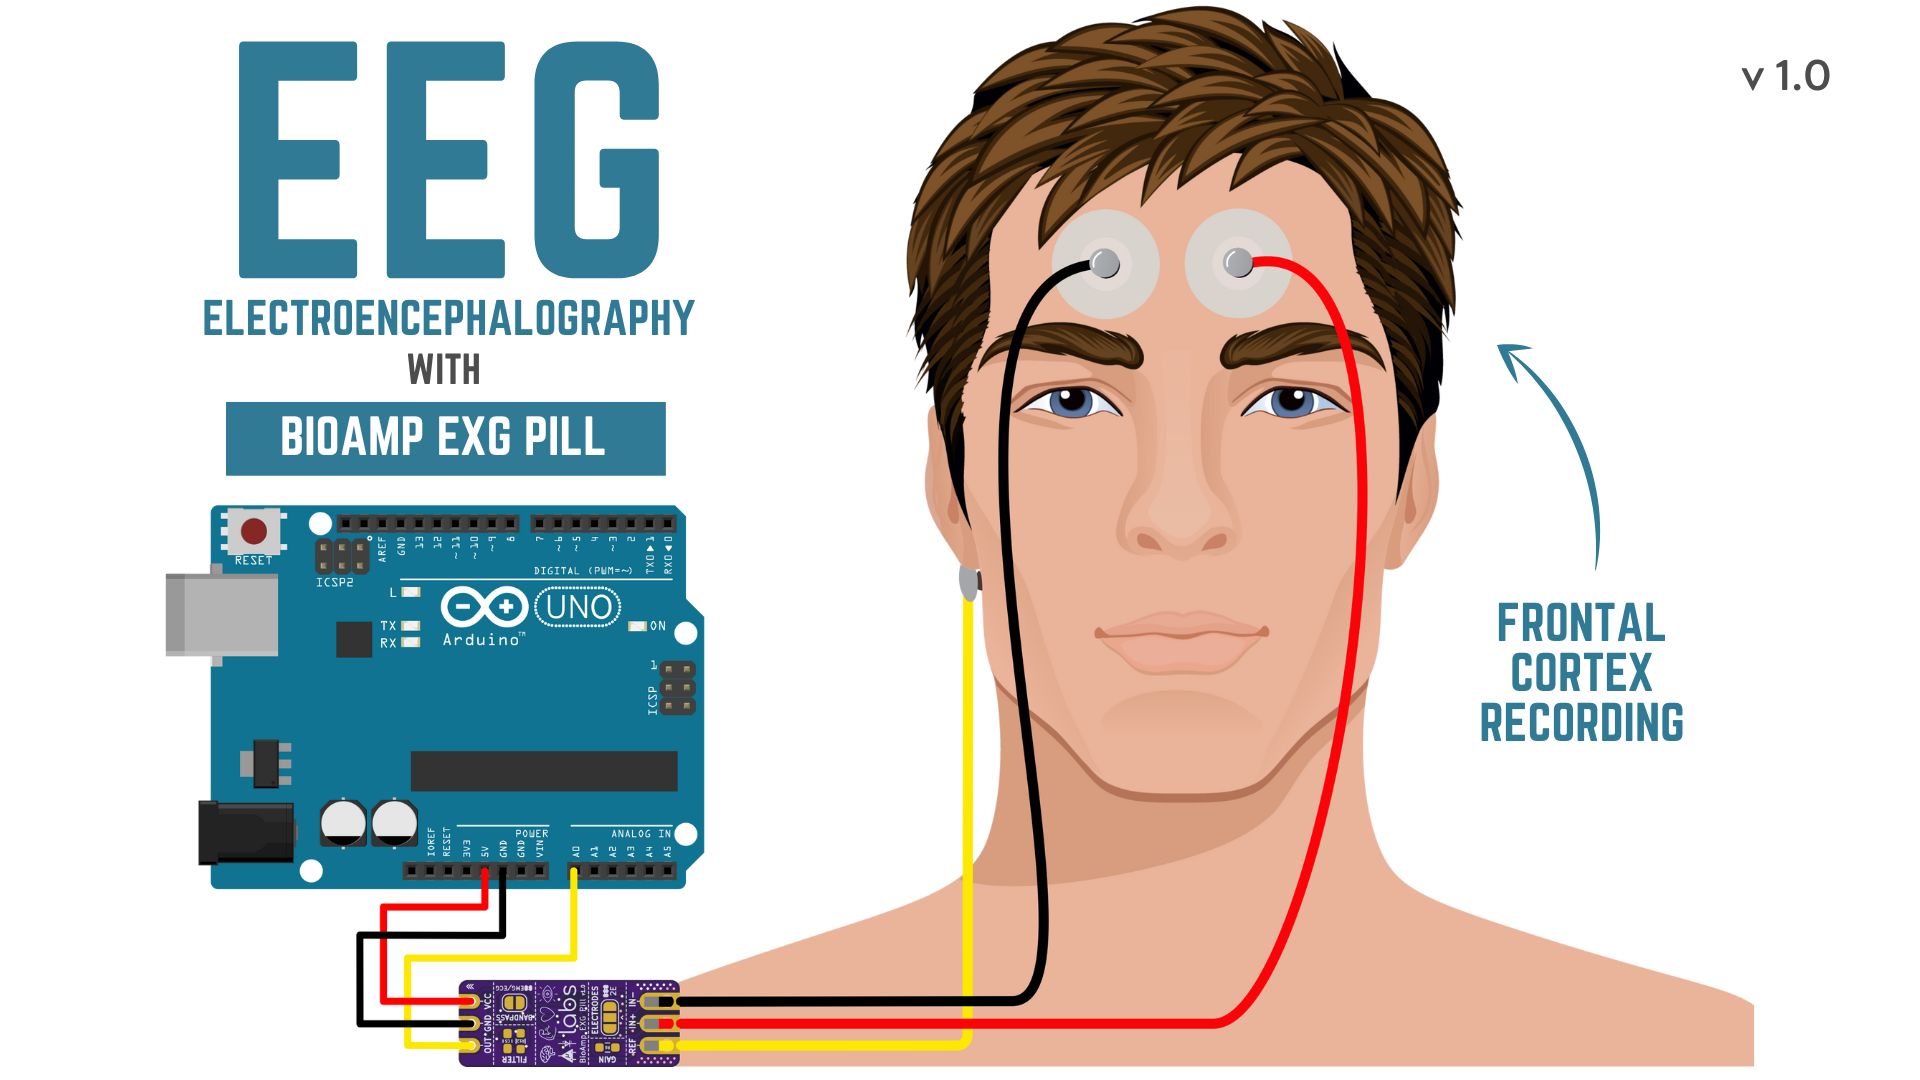 BioAmp EXG Pill - Electroencephalography (EEG)